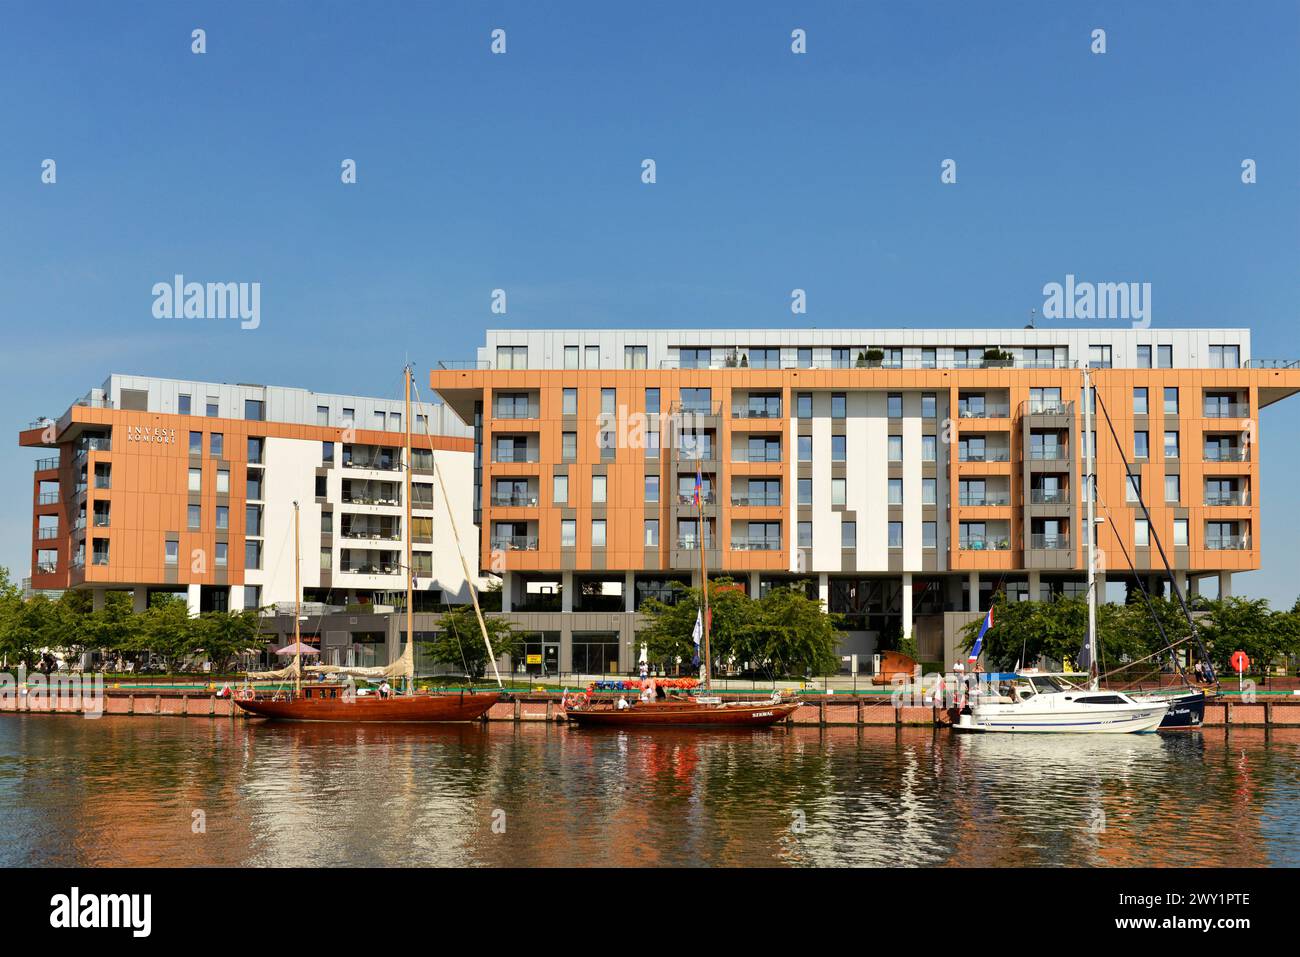 Voiliers amarrés et yachts dans la rivière Motlawa par des immeubles d'appartements de vacances modernes à louer par Invest Komfort dans la vieille ville de Gdansk Pologne, Europe Banque D'Images